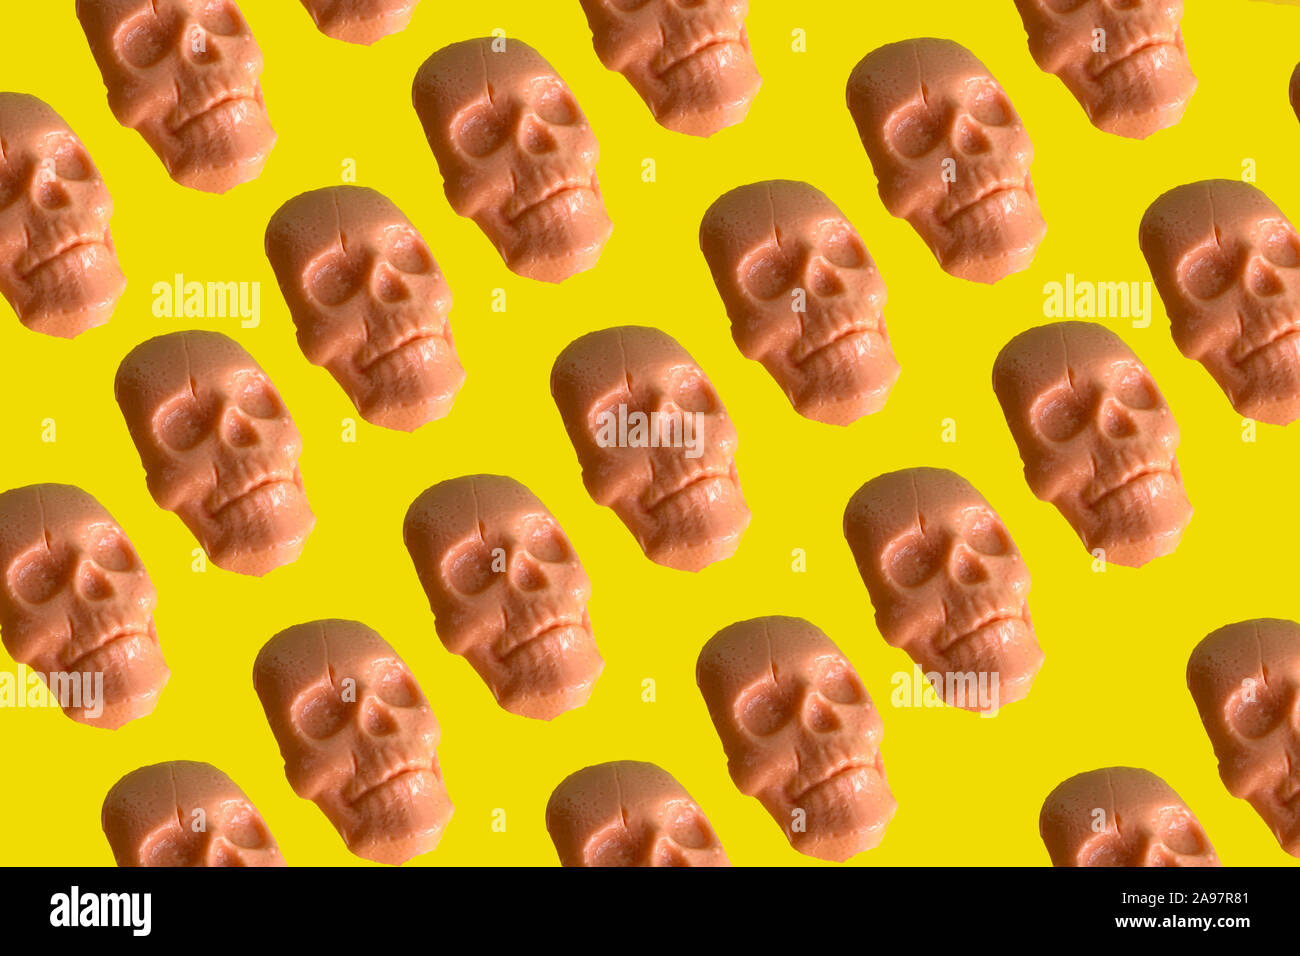 Cráneo humano con forma de caramelo patrón sobre fondo amarillo vibrante Foto de stock